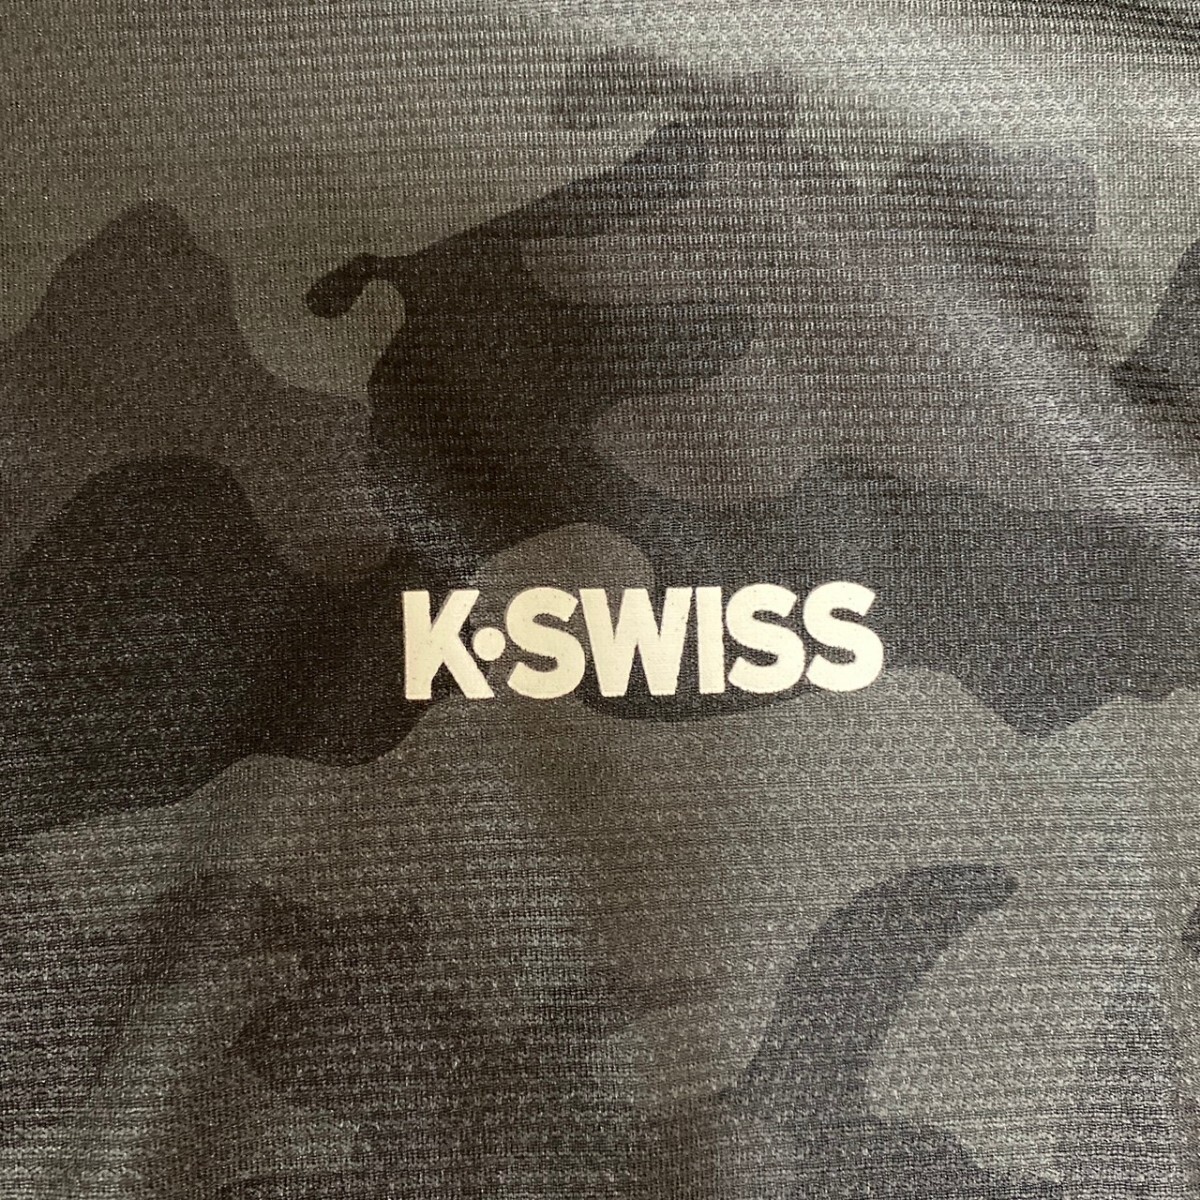 L ケースイスK-SWISS 新品 UVジャケット 上着 長袖 日除け服 黒 UVカット 日焼け対策 メンズ 紳士 アウトドア スポーツ ゴルフウェア golfの画像4